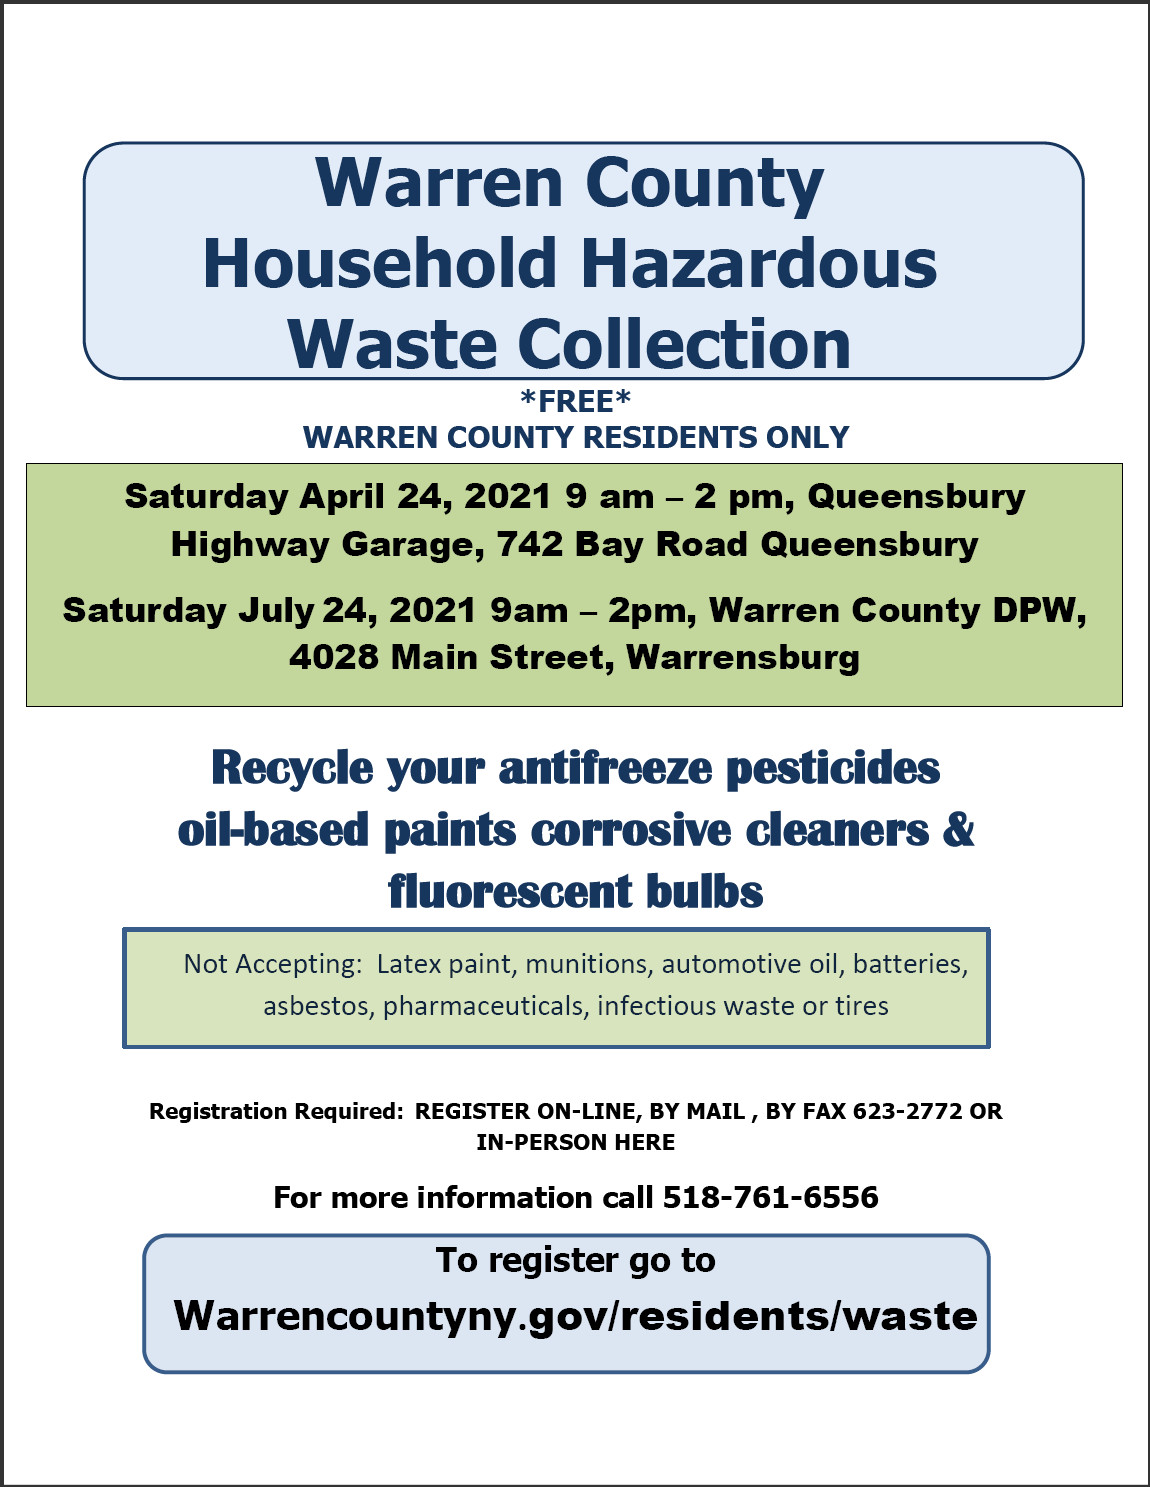 https://www.queensbury.net/warren-county-household-hazardous-waste-collection-day/